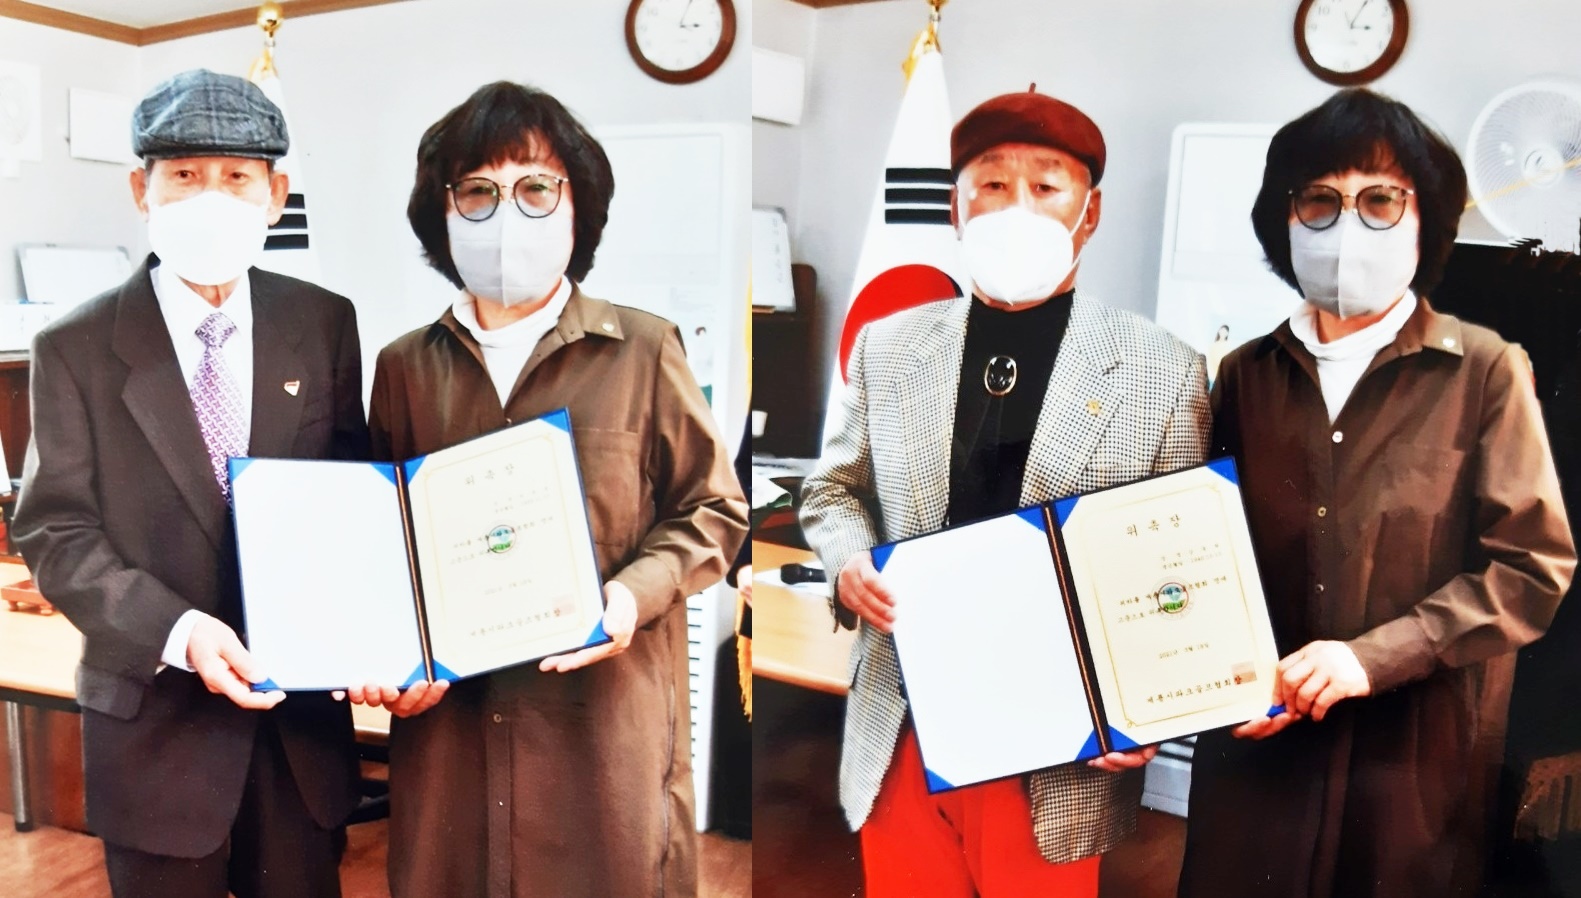 명예고문으로 위촉된 박종훈 씨(왼쪽)와 강동희 씨(오른쪽)